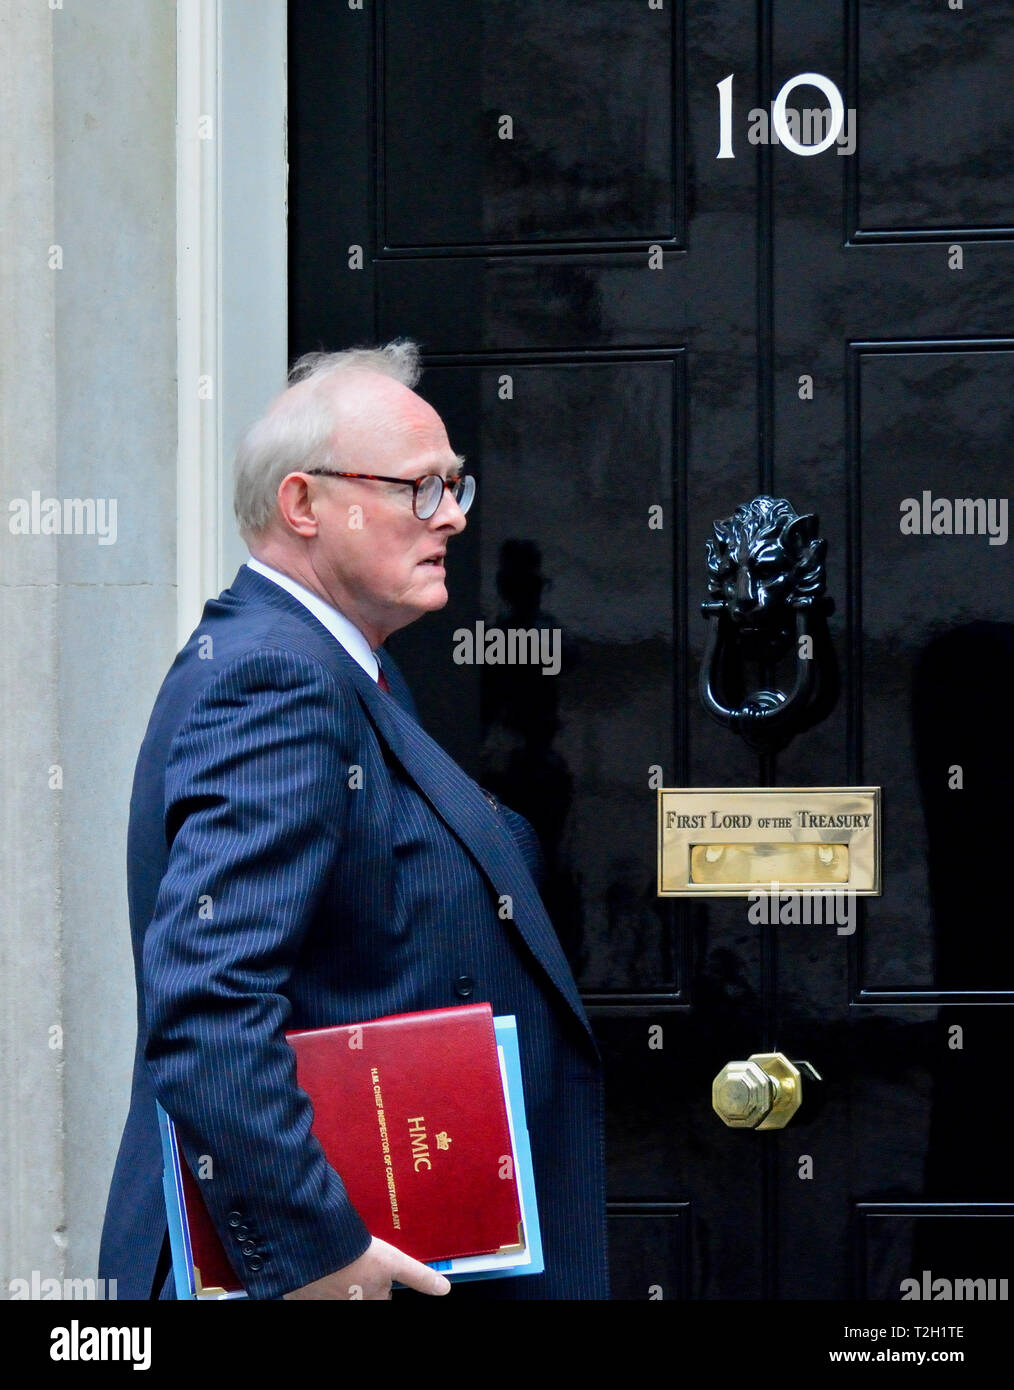 HM inspecteur en chef de la police, Sir Tom Winsor, arrivant au 10 Downing Street pour un couteau, Sommet du crime 1er avril 2019 Banque D'Images